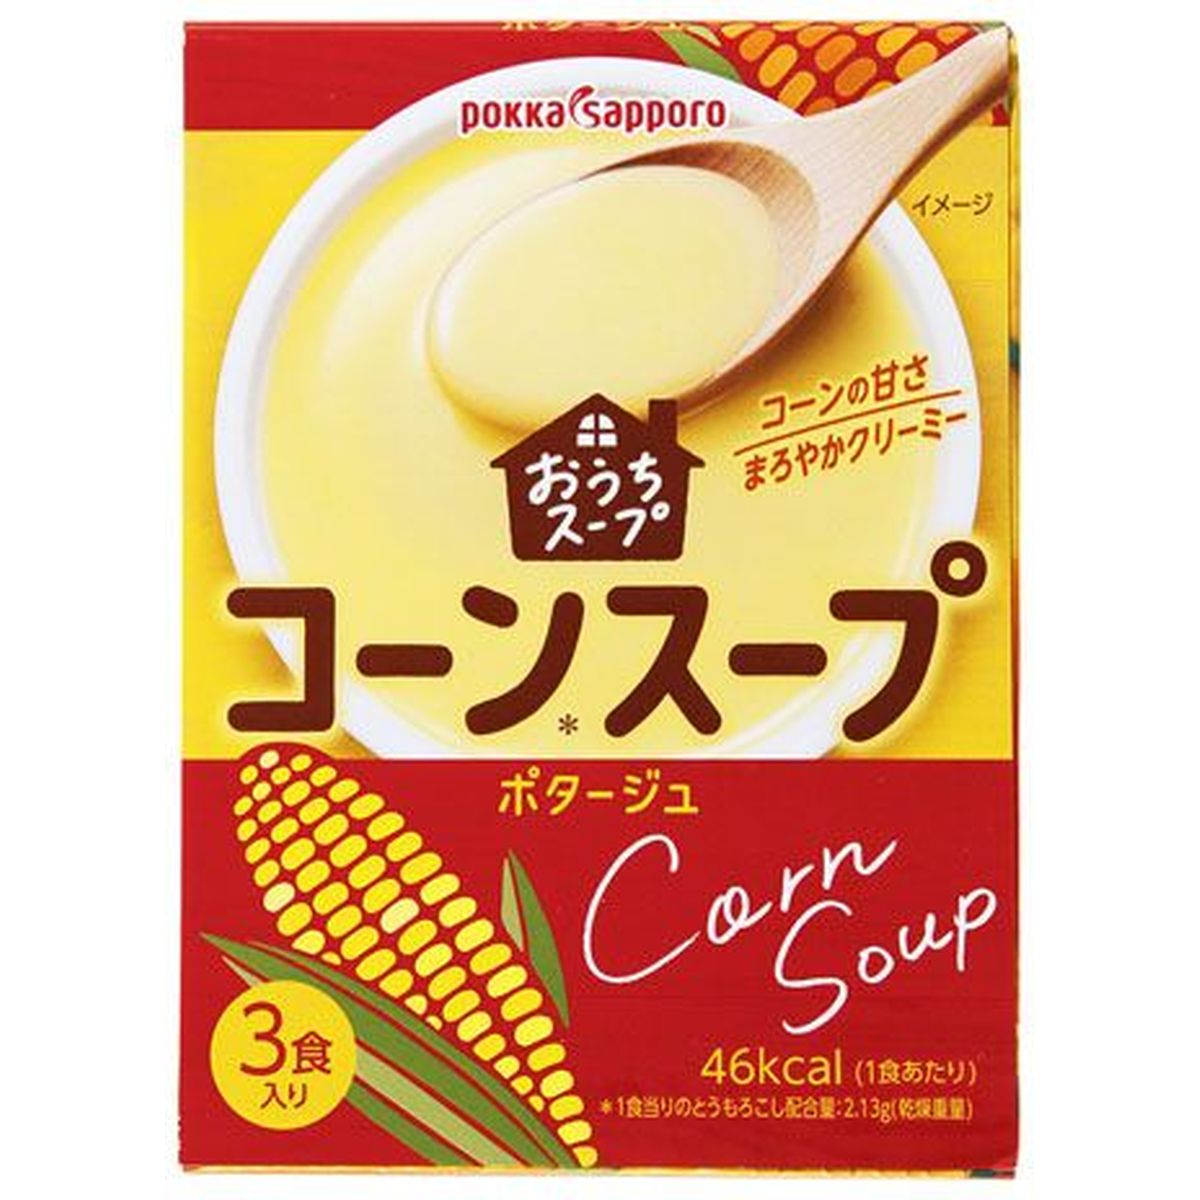 【5個入リ】ポッカサッポロ オウチスープコーンスープ 12gX3箱